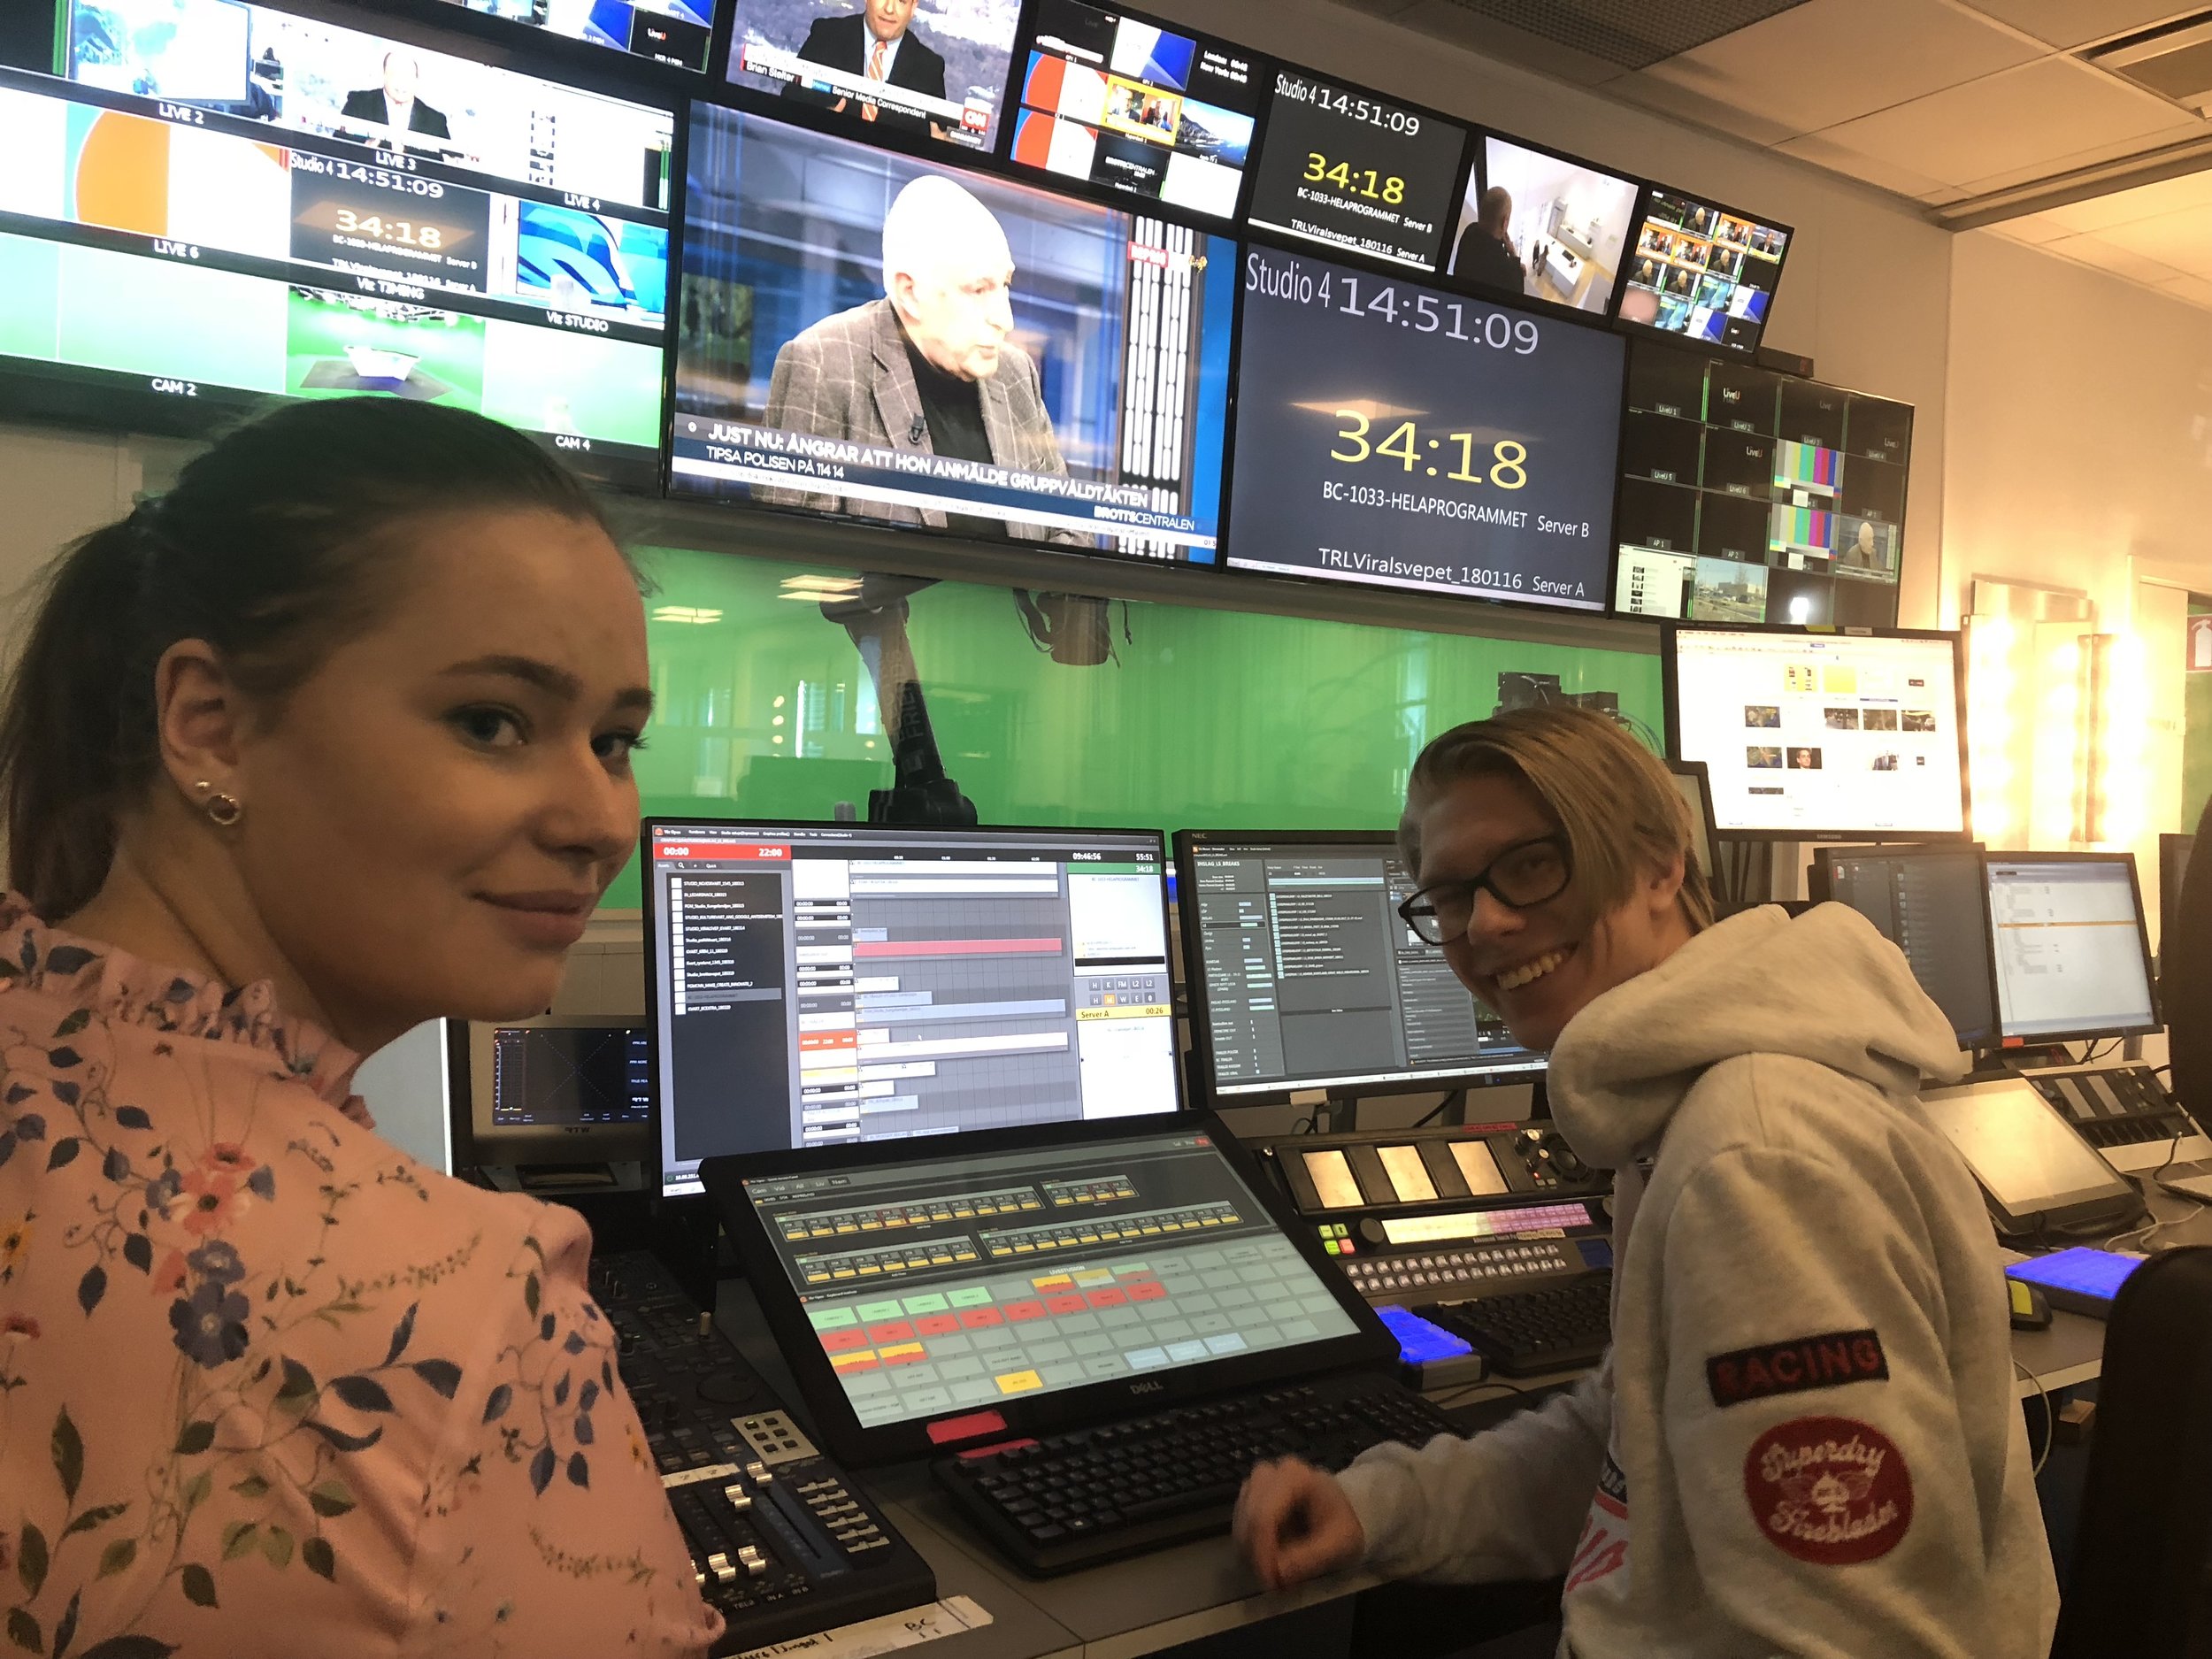  Anna Larsson och Fredrik Svensson gjorde LIA på Expressen som sändningsproducenter hösten 2018. 